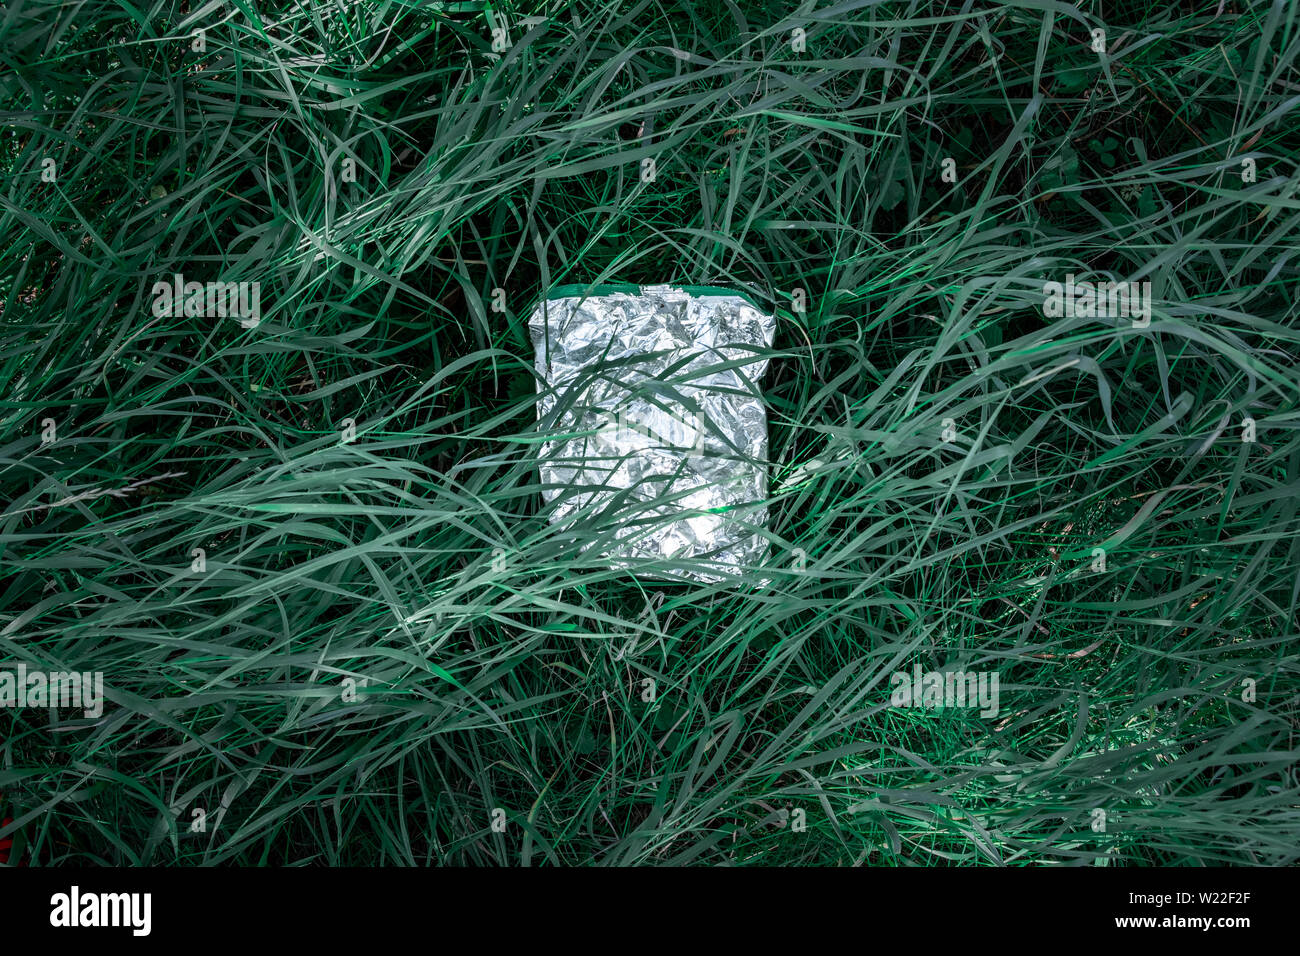 Sac en plastique dans l'herbe verte, la pollution de la nature concept. Morceau de déchets en plastique (vide emballage pour les produits alimentaires) jetés sur une pelouse Banque D'Images